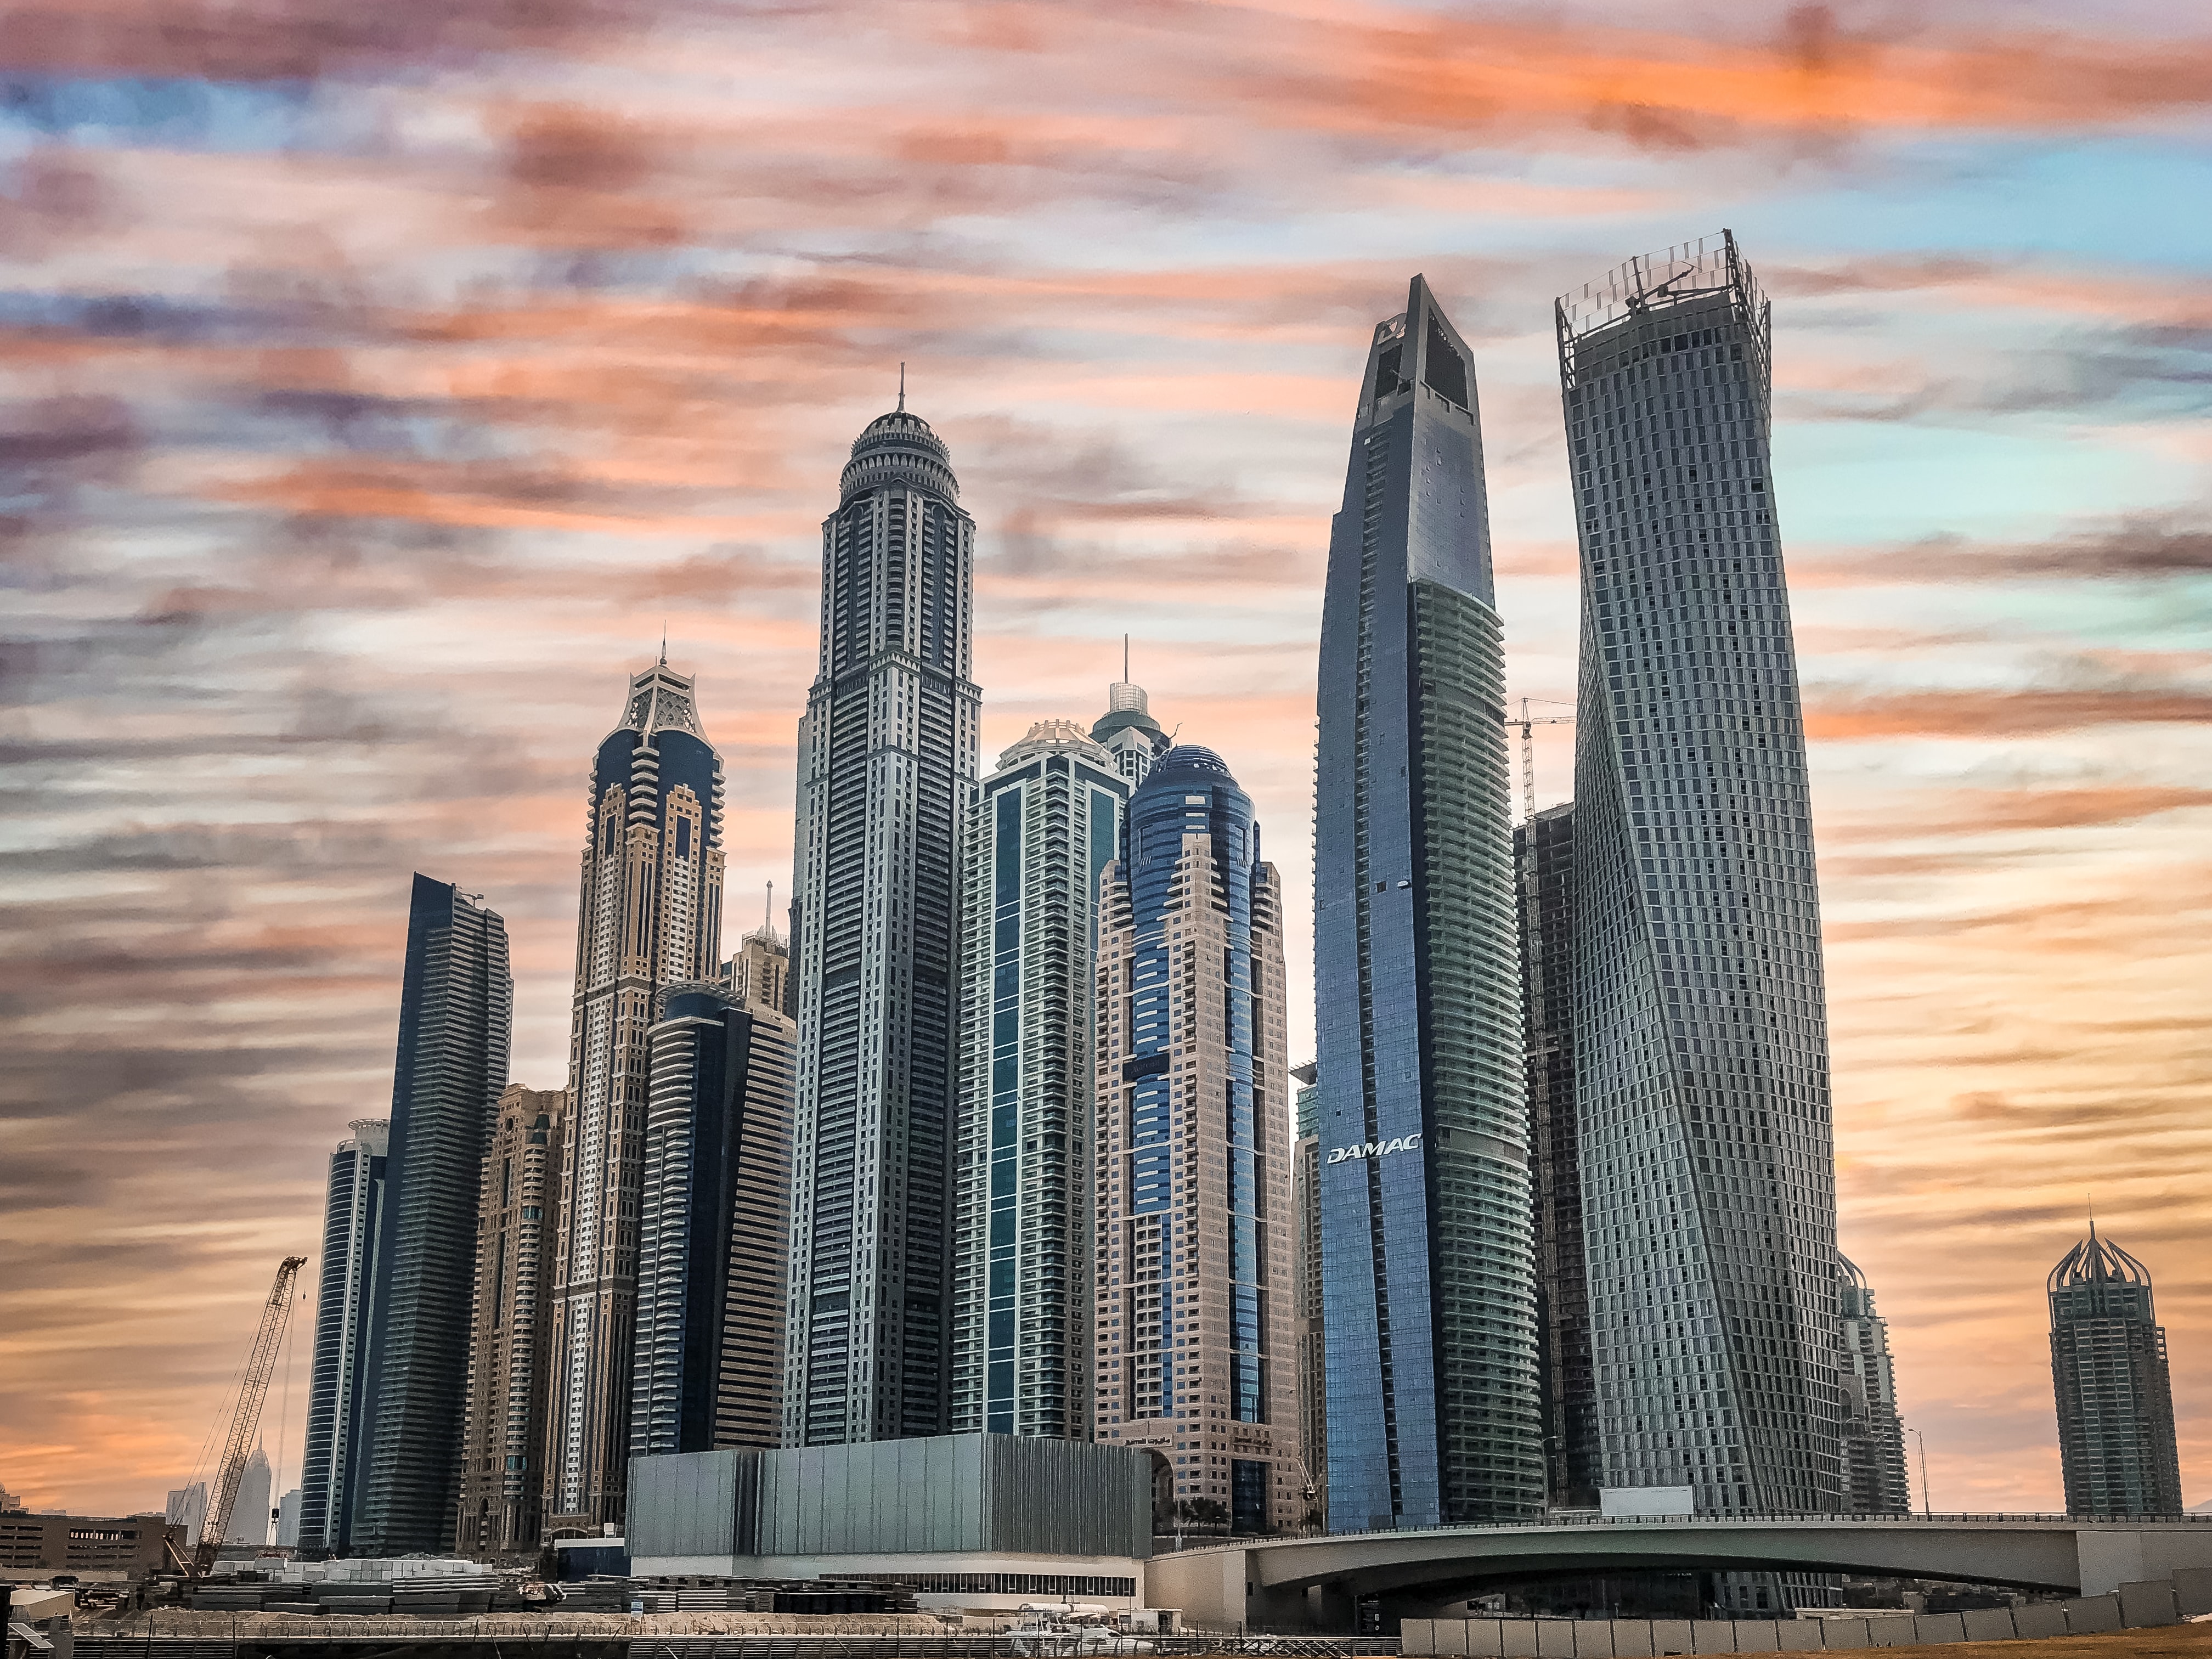 Скачать обои Дубай на телефон в высоком качестве, вертикальные картинки  Дубай бесплатно